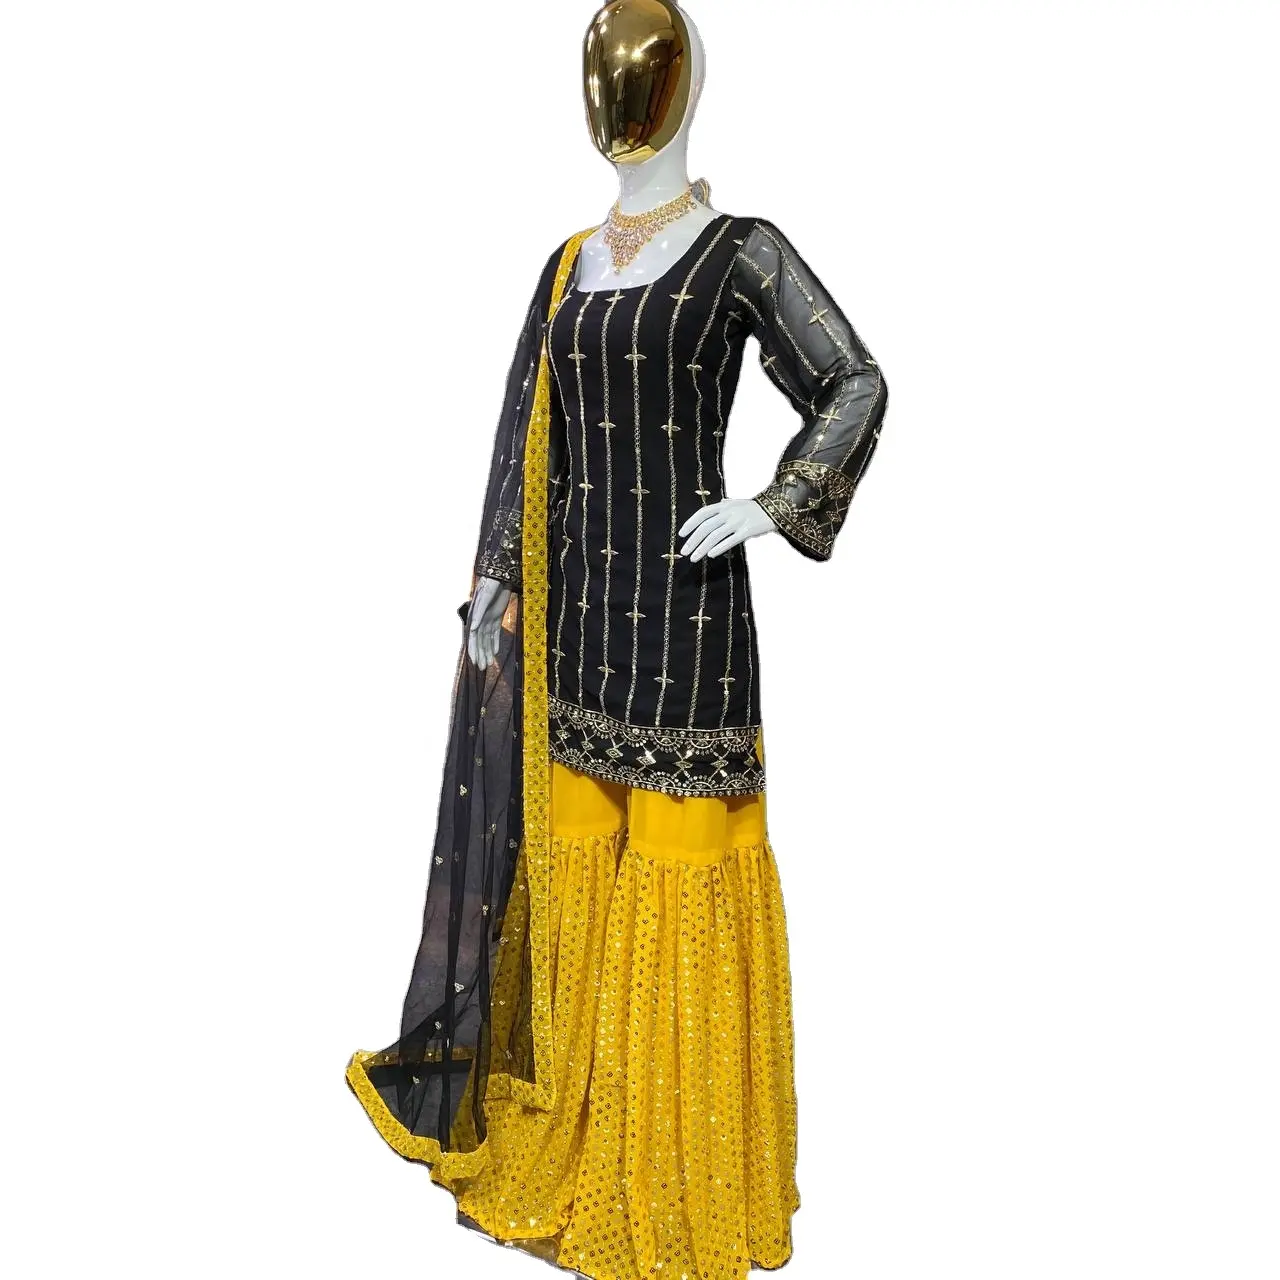 Fulpari 하이 온 디맨드 최신 디자인 조젯 파키스탄 원피스 파티 및 웨딩웨어 드레스 수출 가능